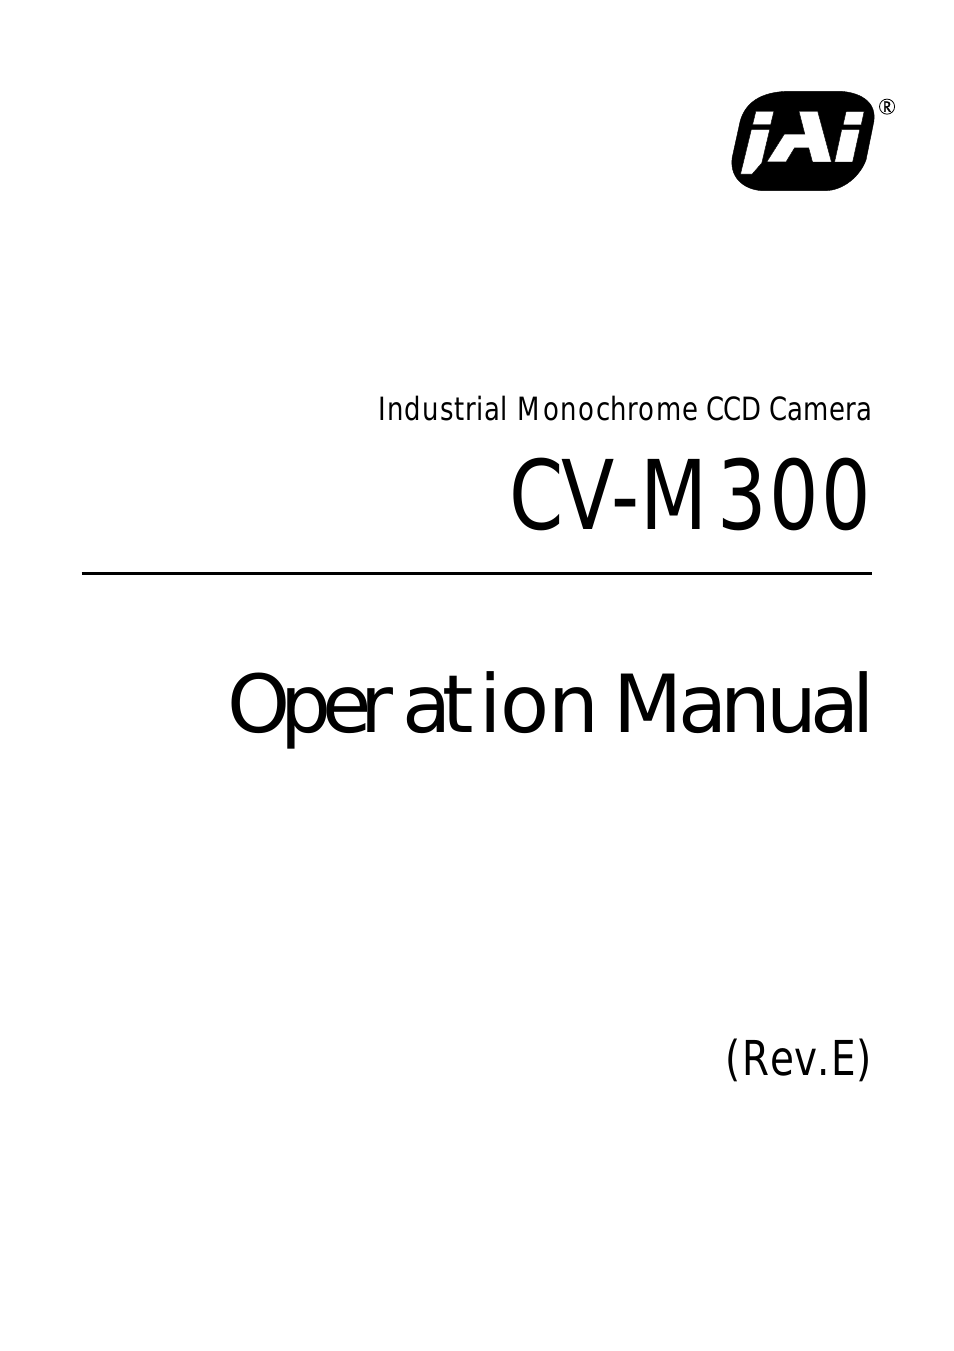 CV-M300